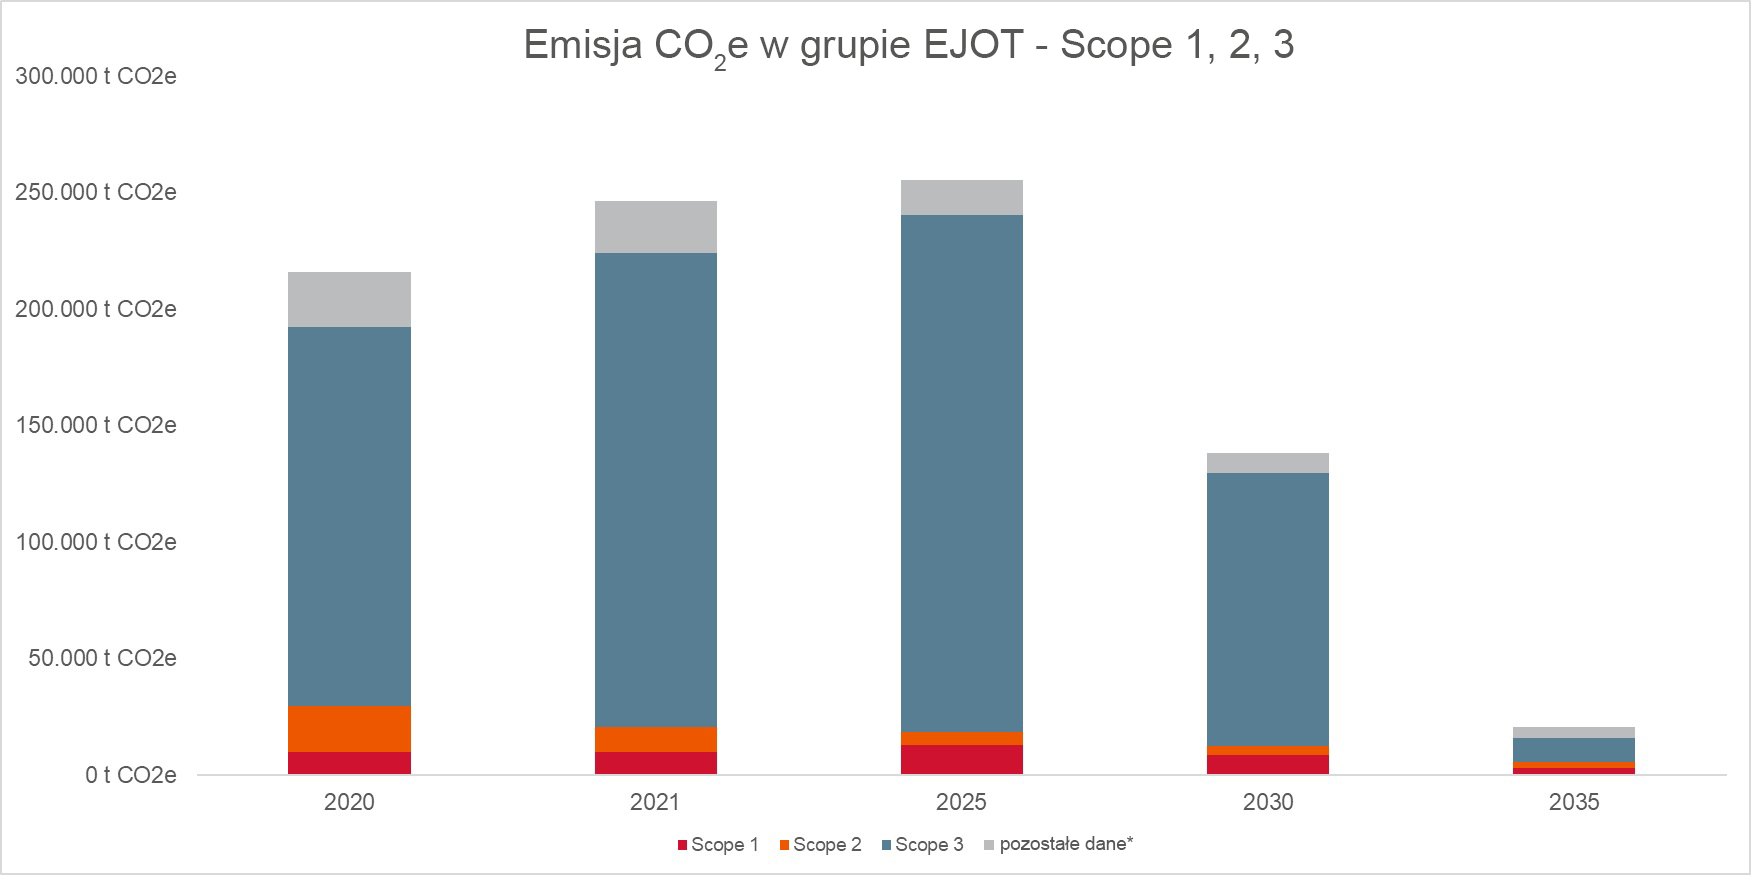 Emisja -CO2e w grupie EJOT